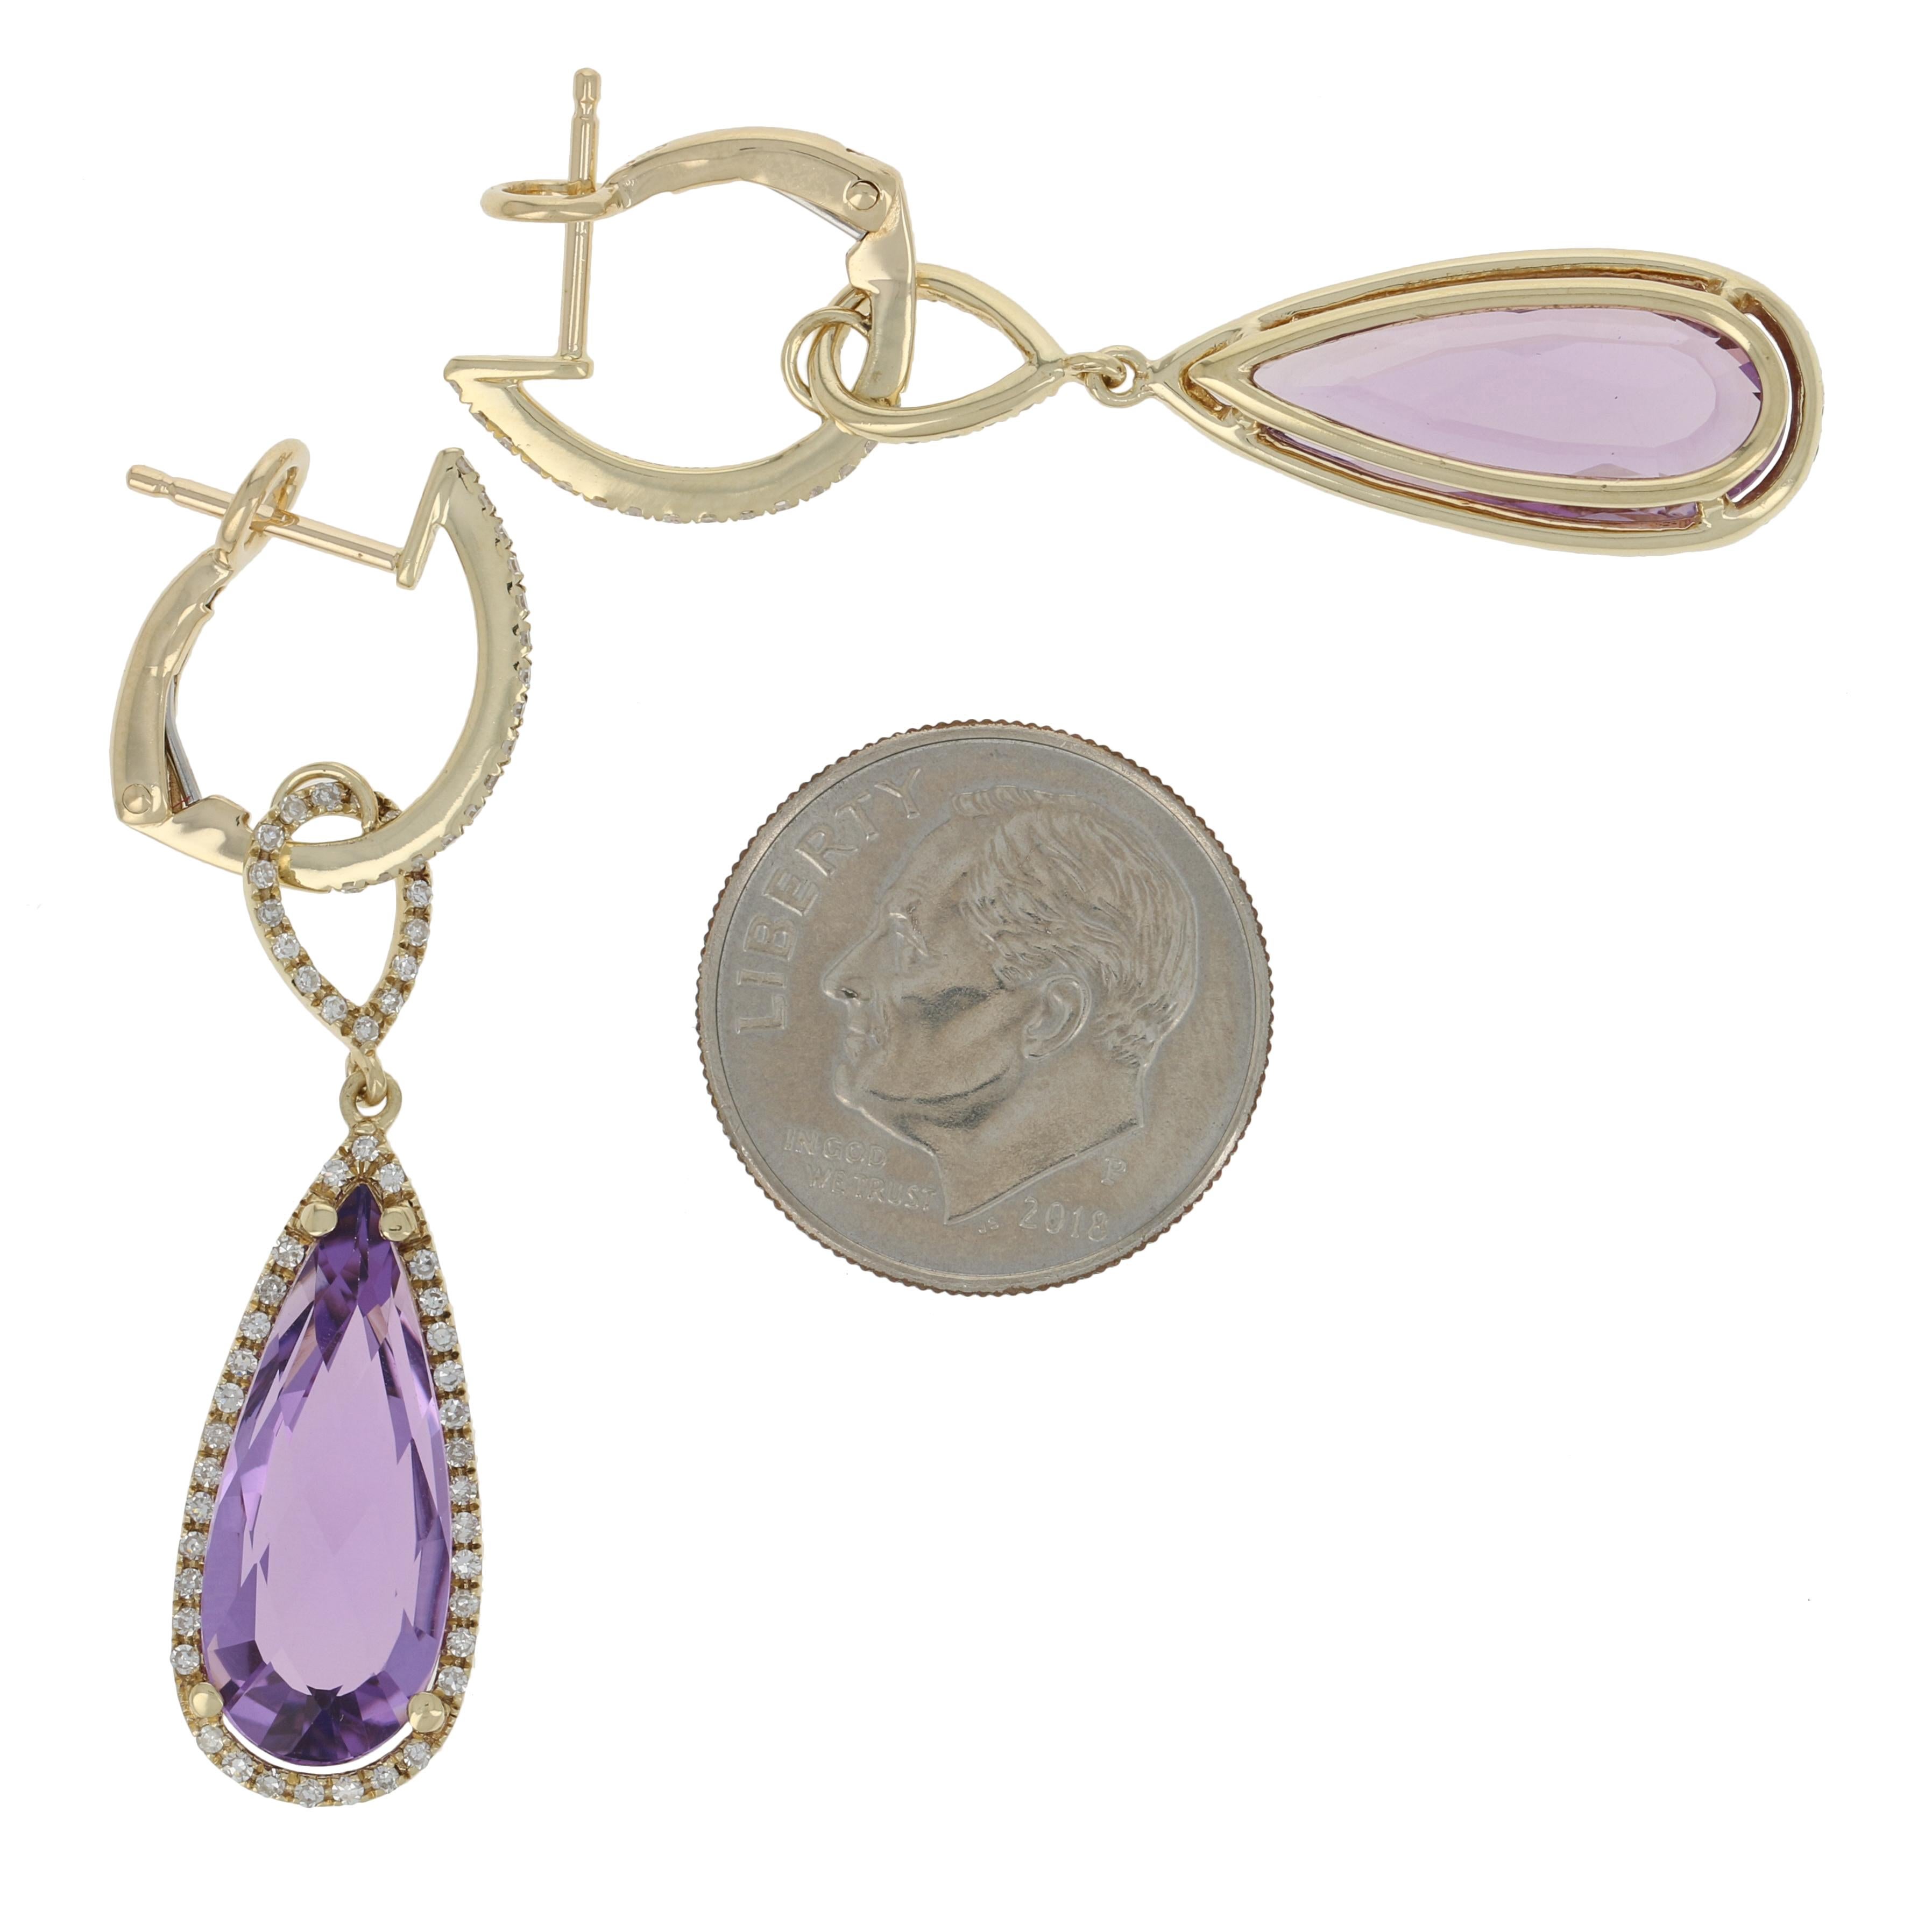 10.94ctw Pear Cut Amethyst & Diamond Earrings & Pendant Necklace 14k Gold Halo 4